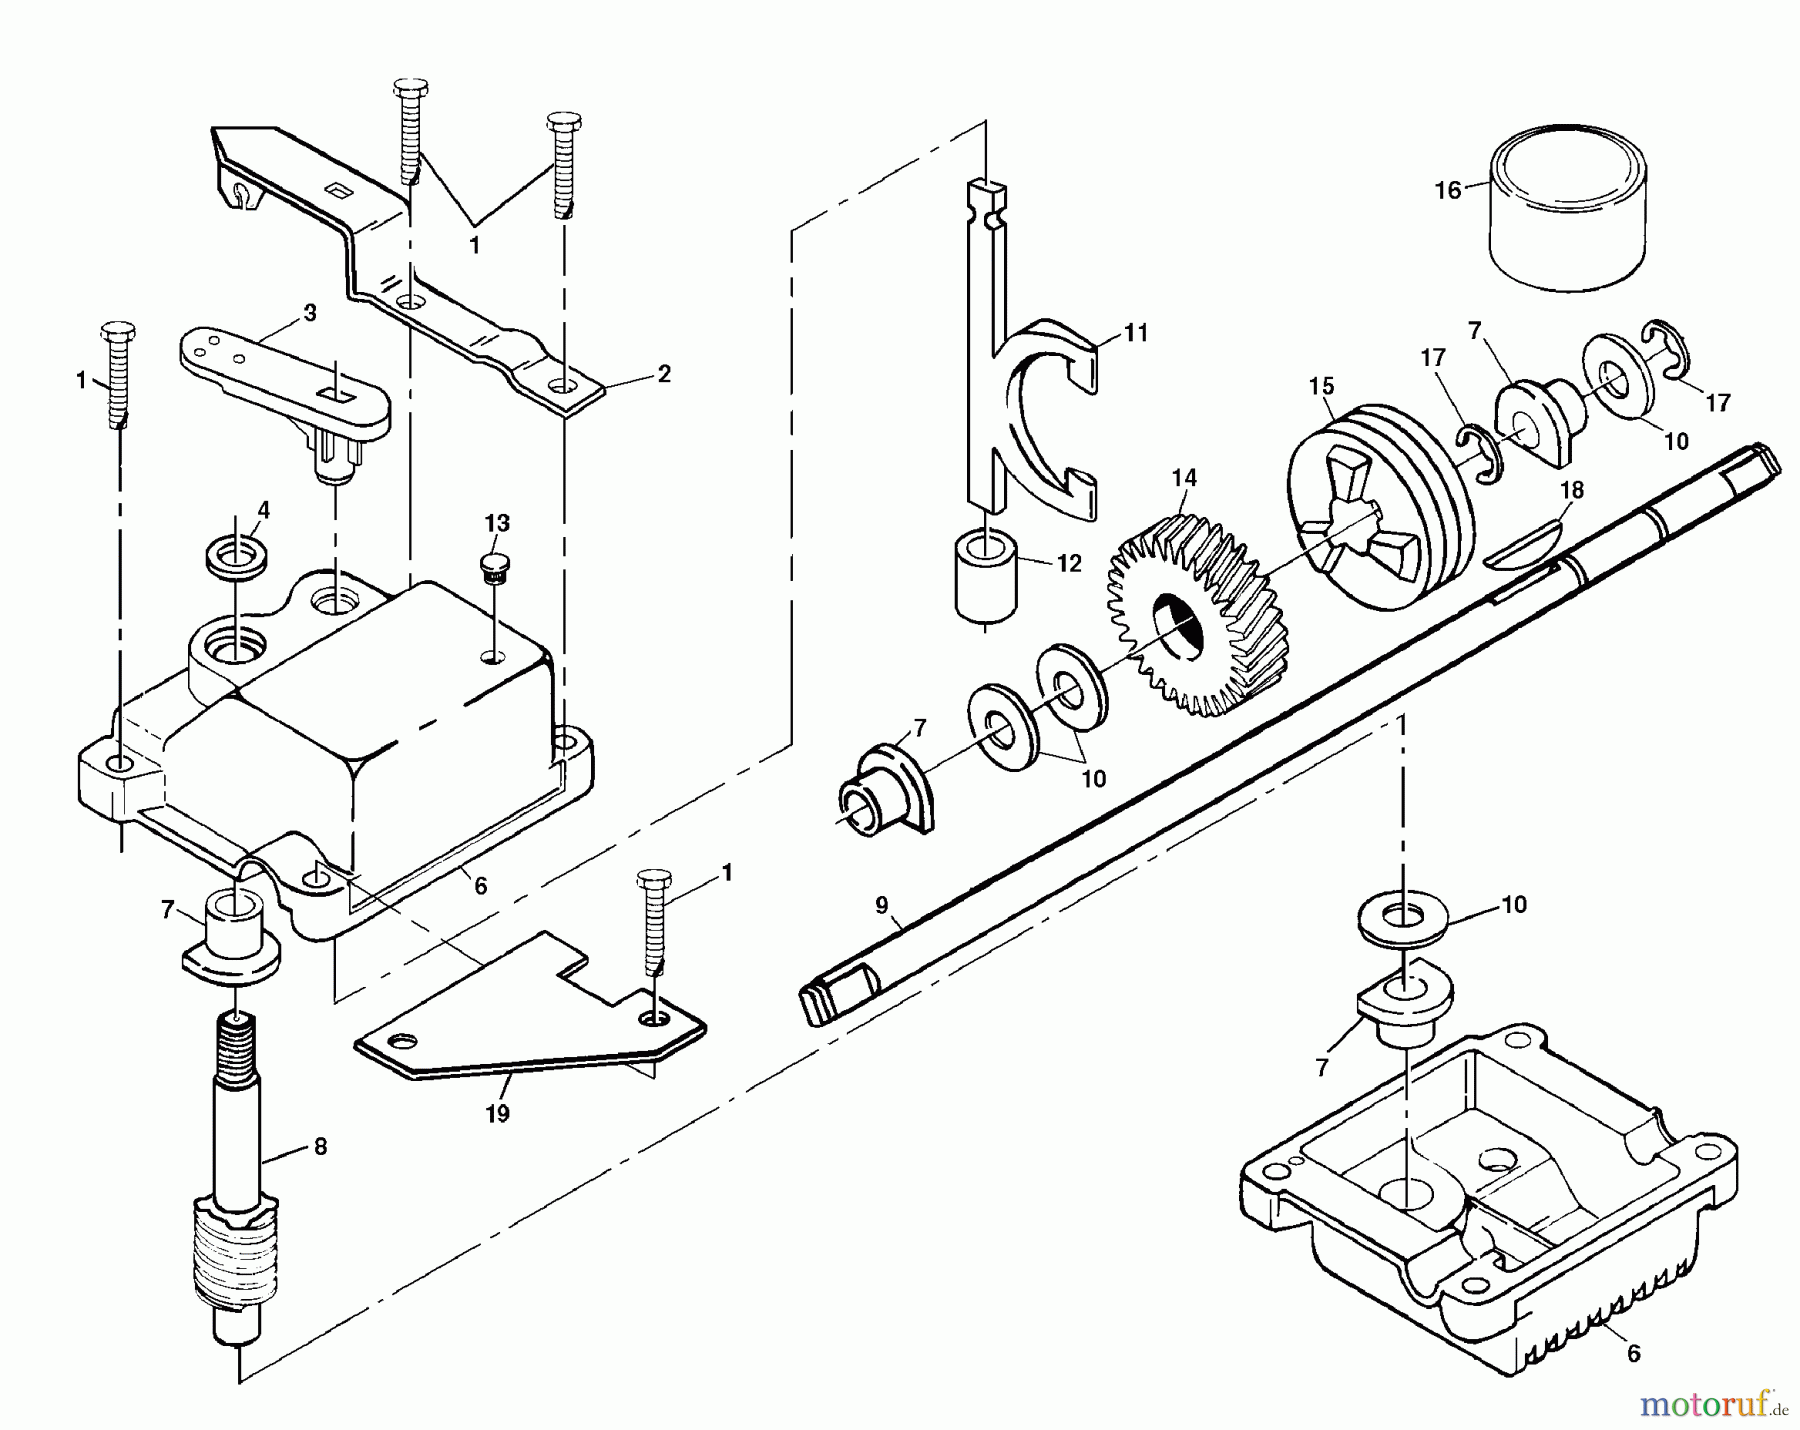  Husqvarna Rasenmäher 6522 RFA (954222725) - Husqvarna Walk-Behind Mower (2000-01 & After) Gear Case Assembly